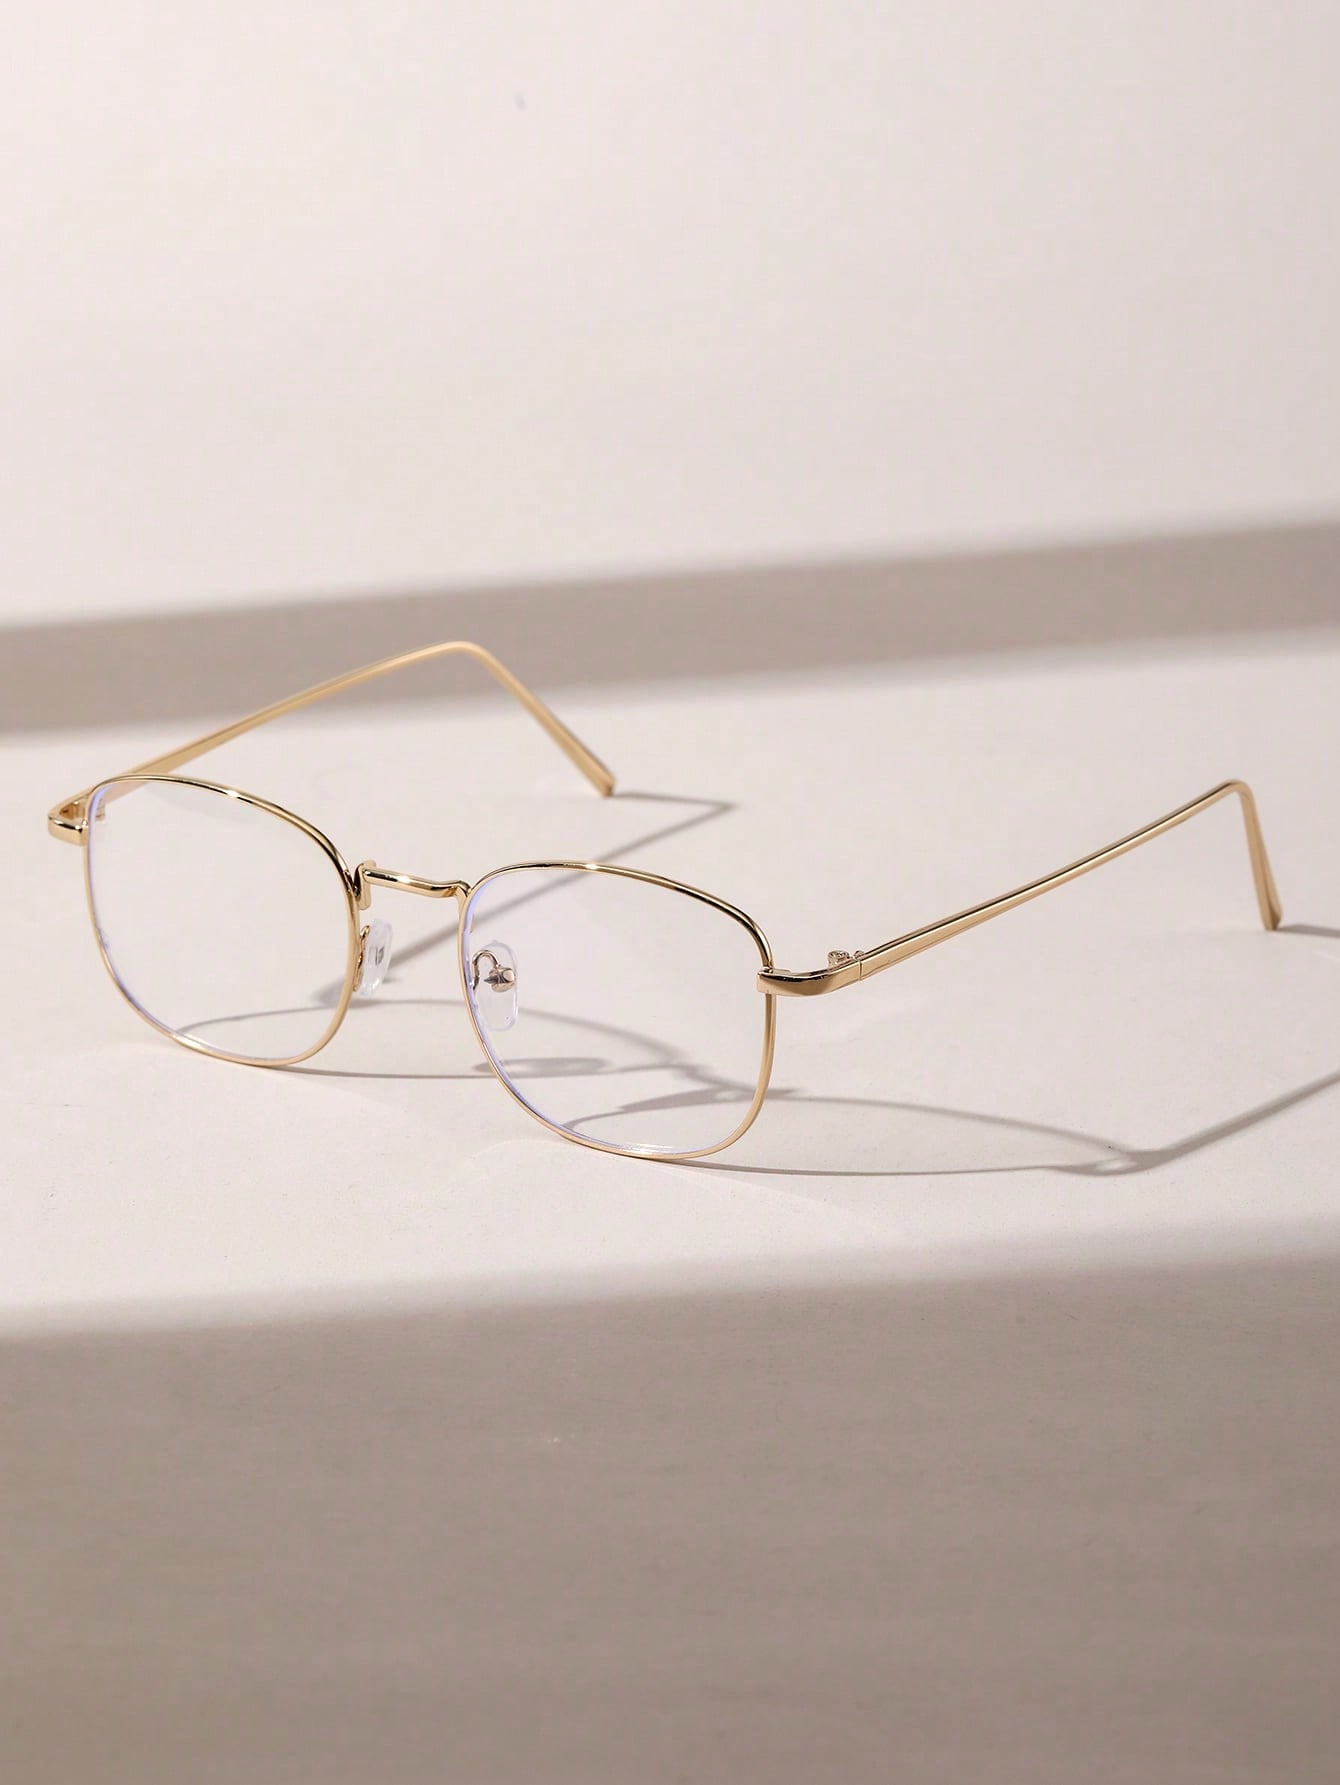 1 шт. женские геометрические медные оправы ультралегкие очки для чтения hd полуободковые пресбиопические очки женские очки от 1 до 4 0 прозрачные очки солнцезащитные очки для мужчин